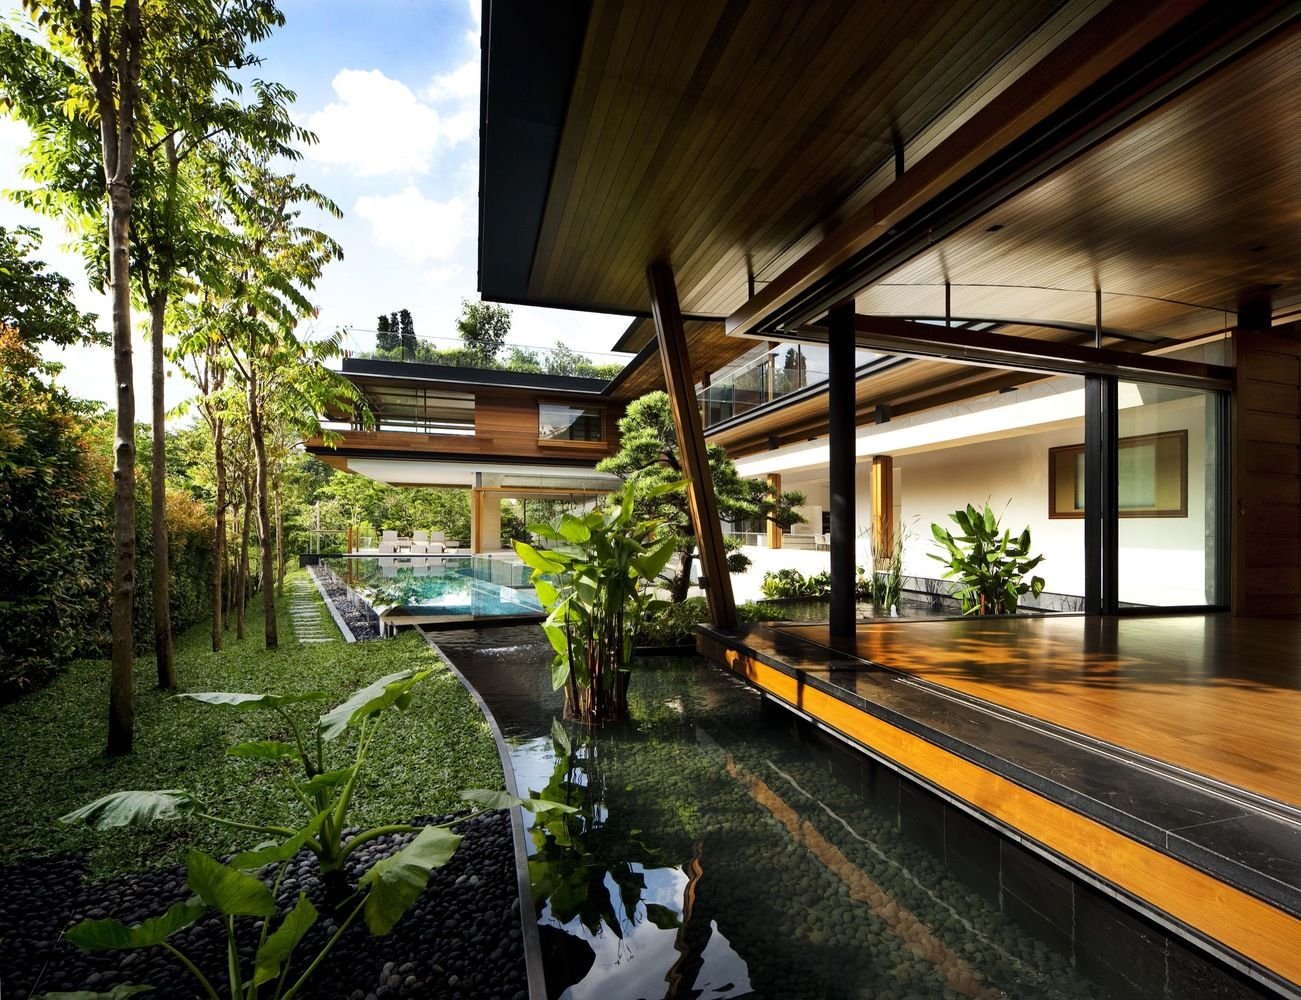 20190709151059 ffd0 Thăm ngôi nhà xanh mát như vườn bách thảo thu nhỏ ở Singapore